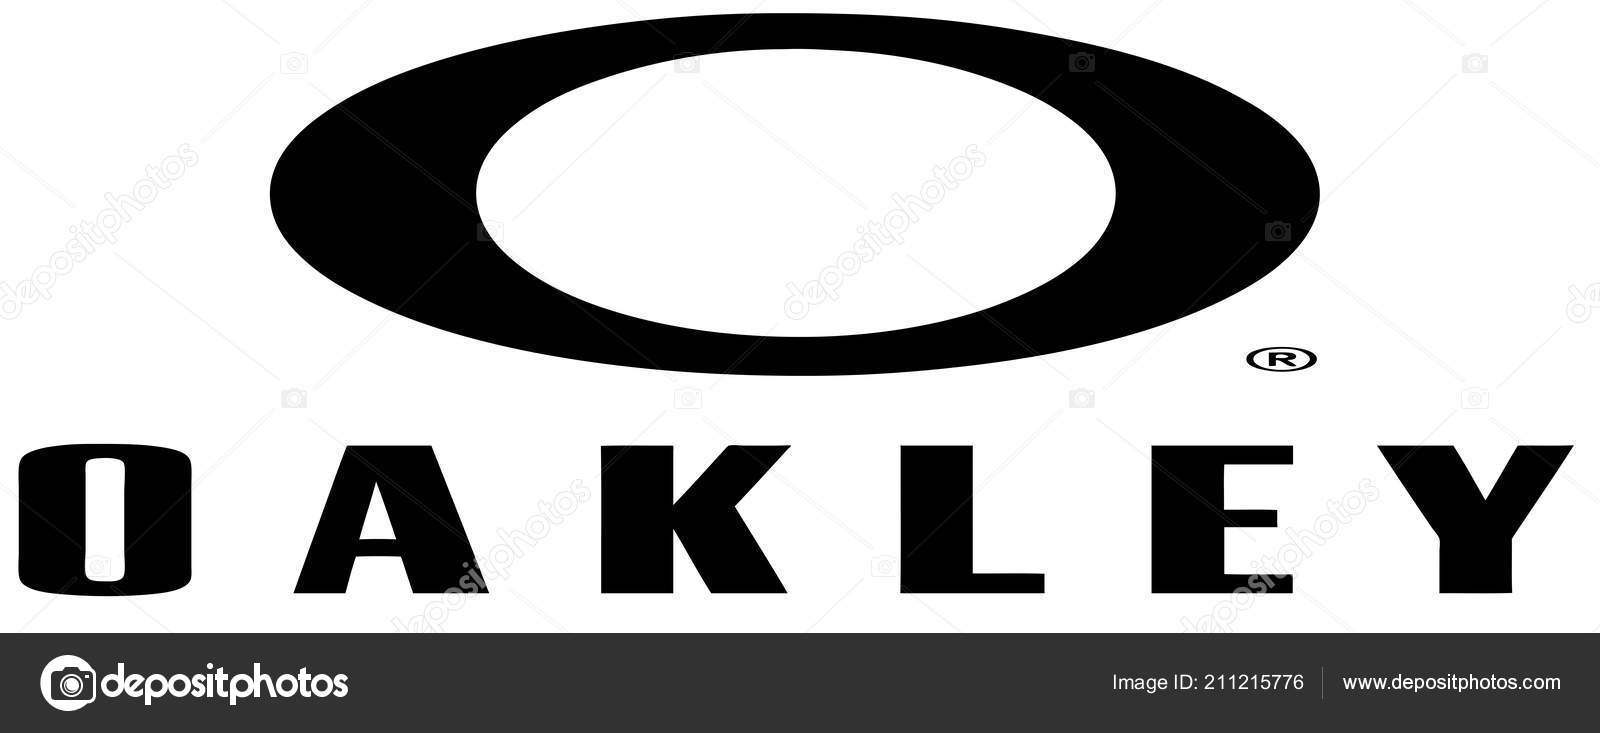 oakley emblem